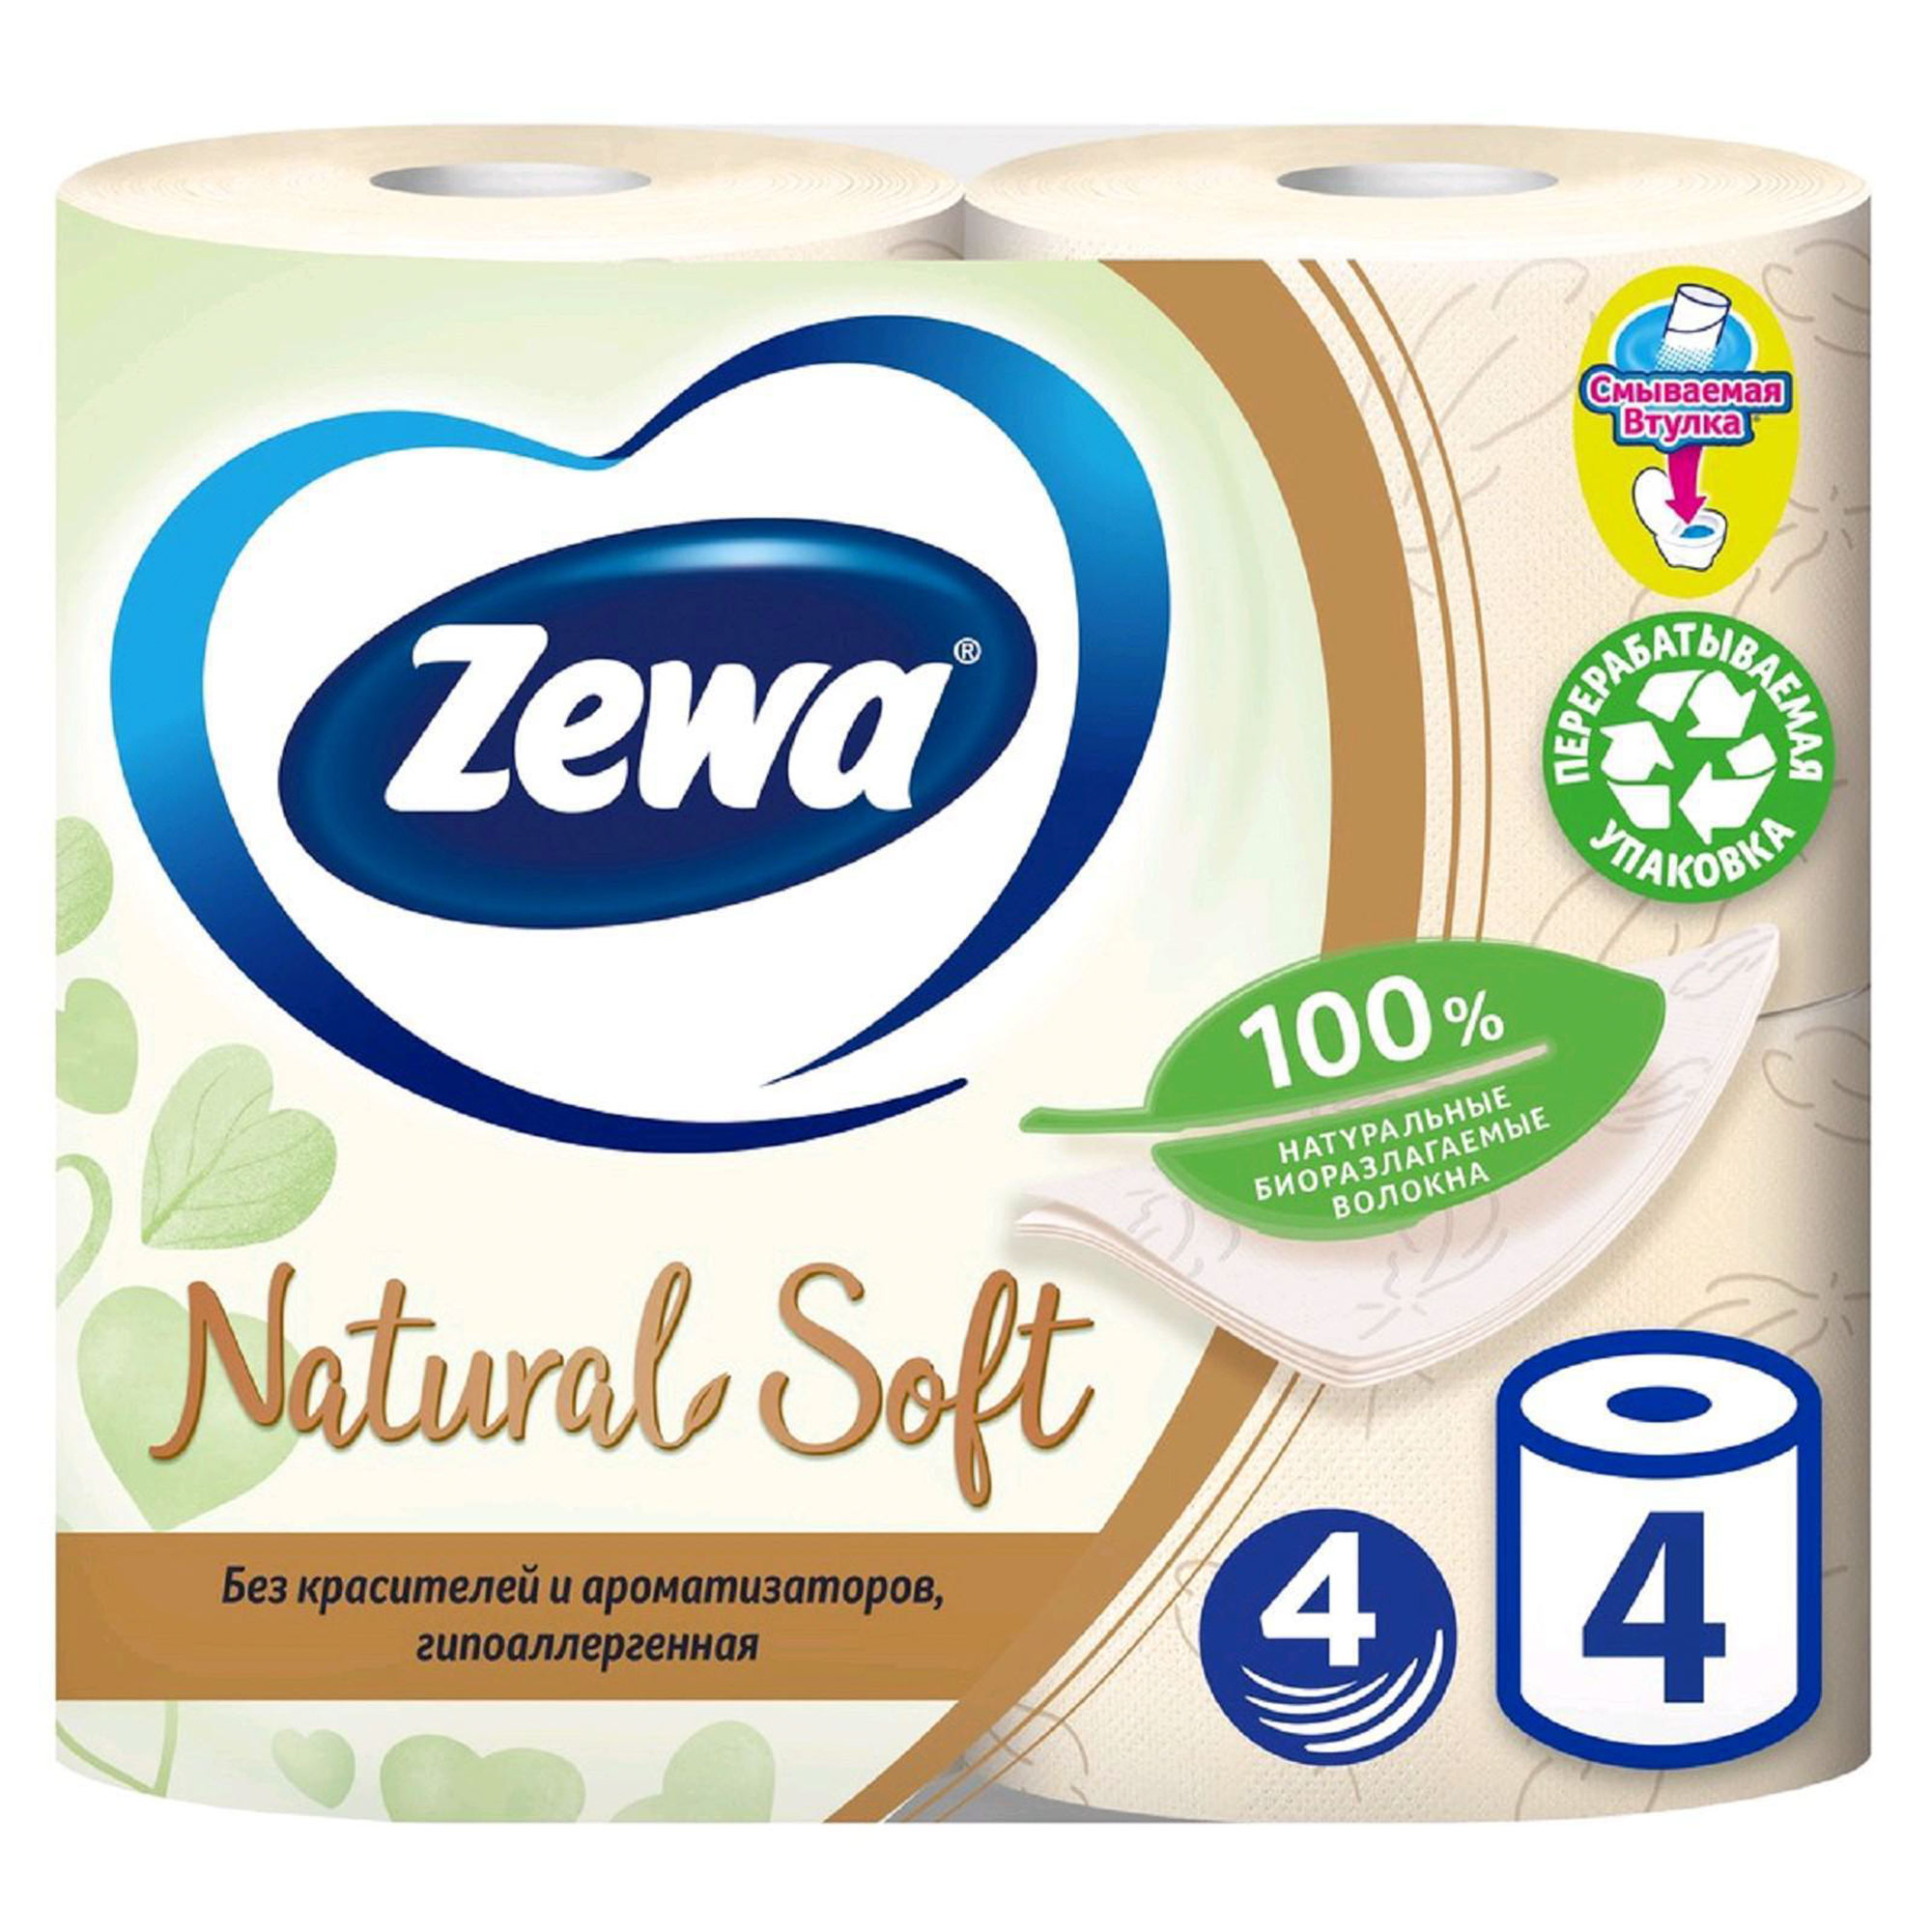 Туалетная бумага Zewa Natural Soft четырехслойная 4 шт туалетная вода